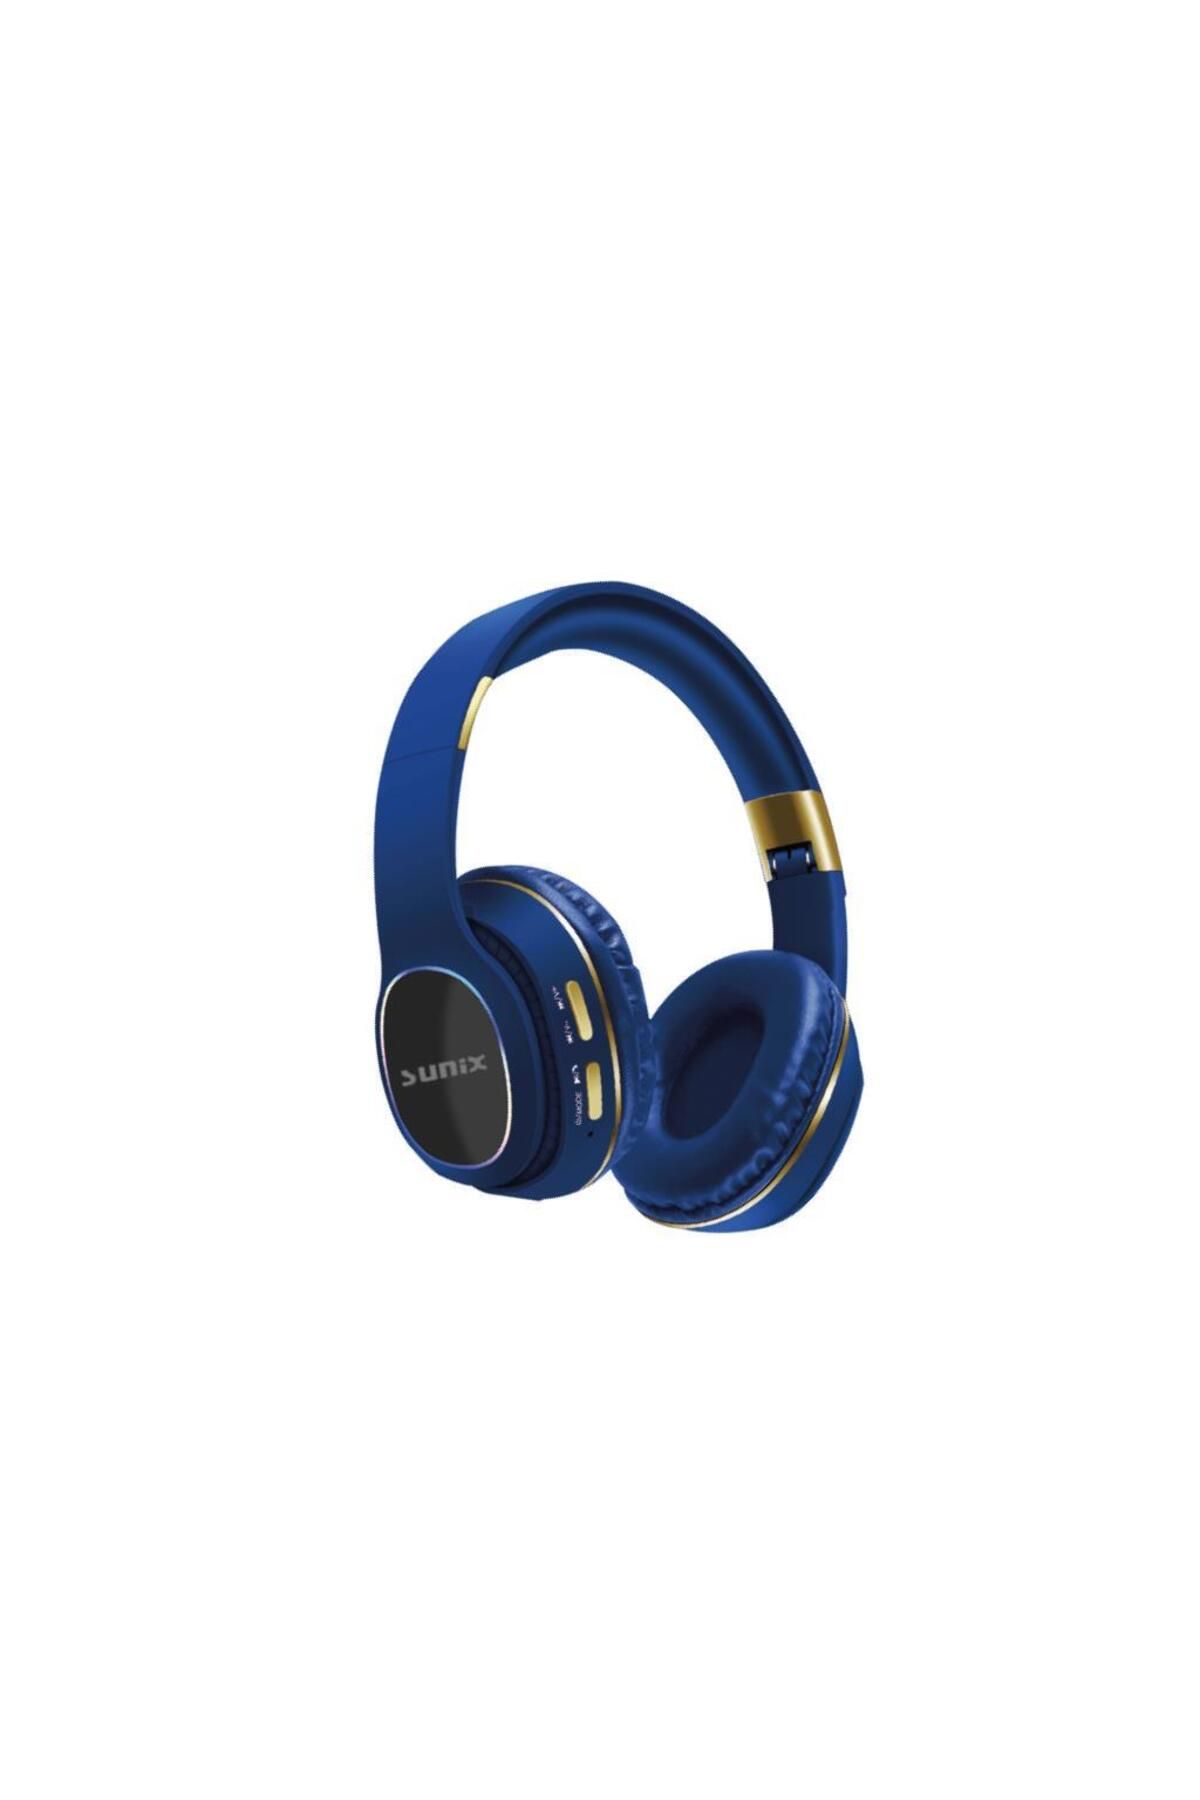 Sunix Wireless 5.0 Süper Bass Kulak Üstü Bluetooth Kulaklık Mavi Blt-26